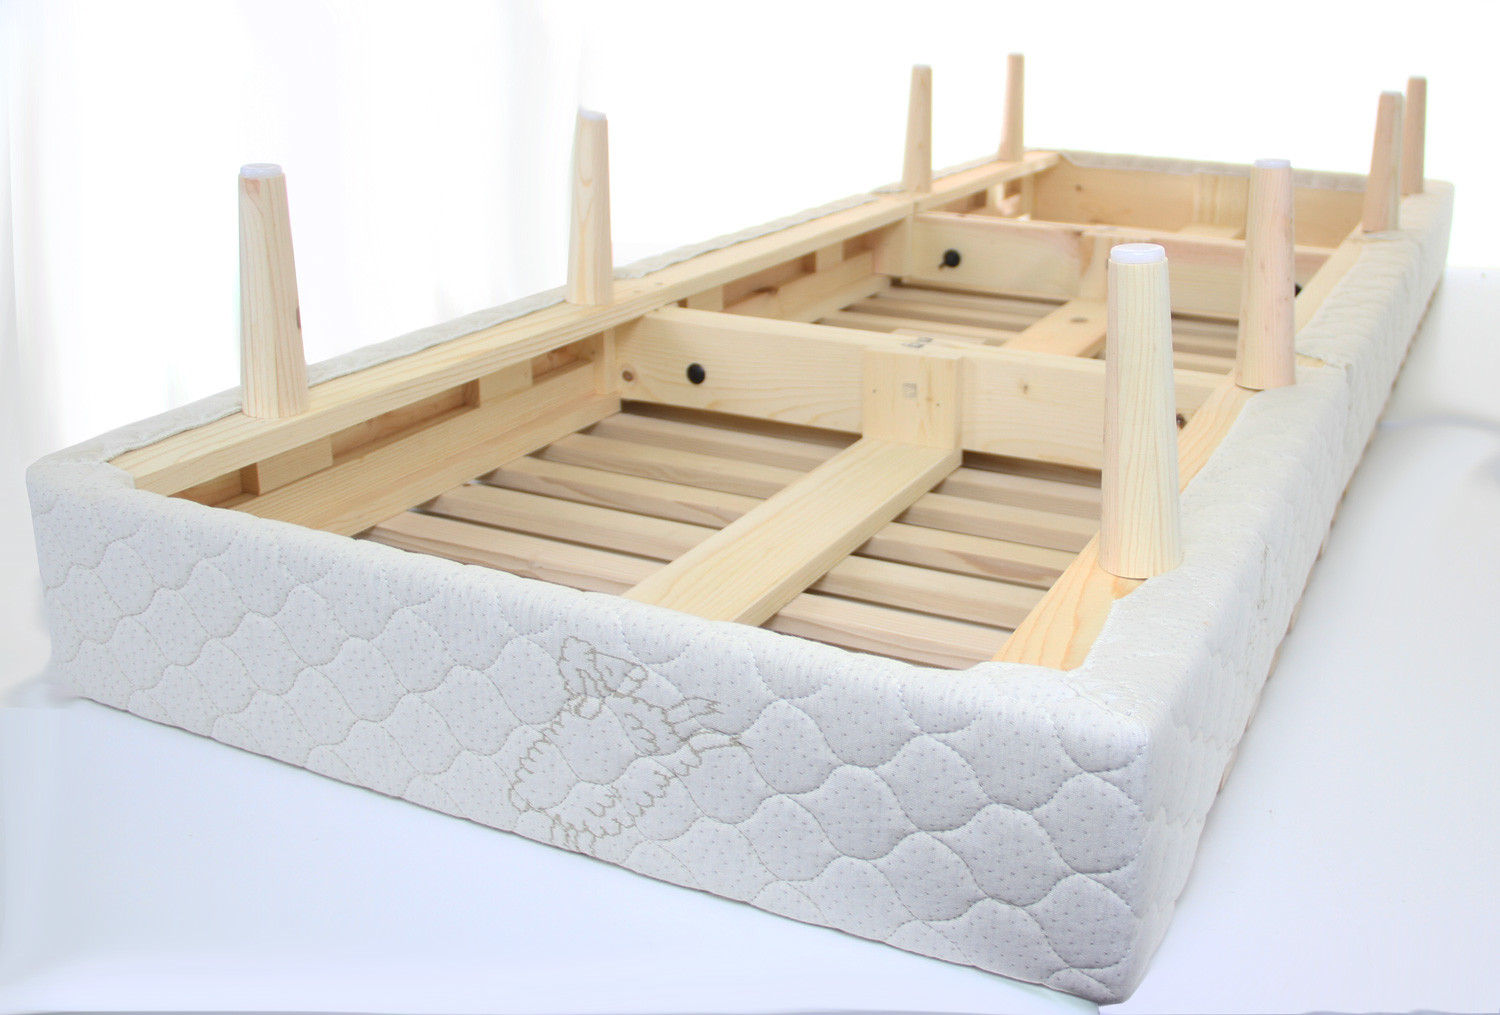 is a foam mattress alright on wood slats